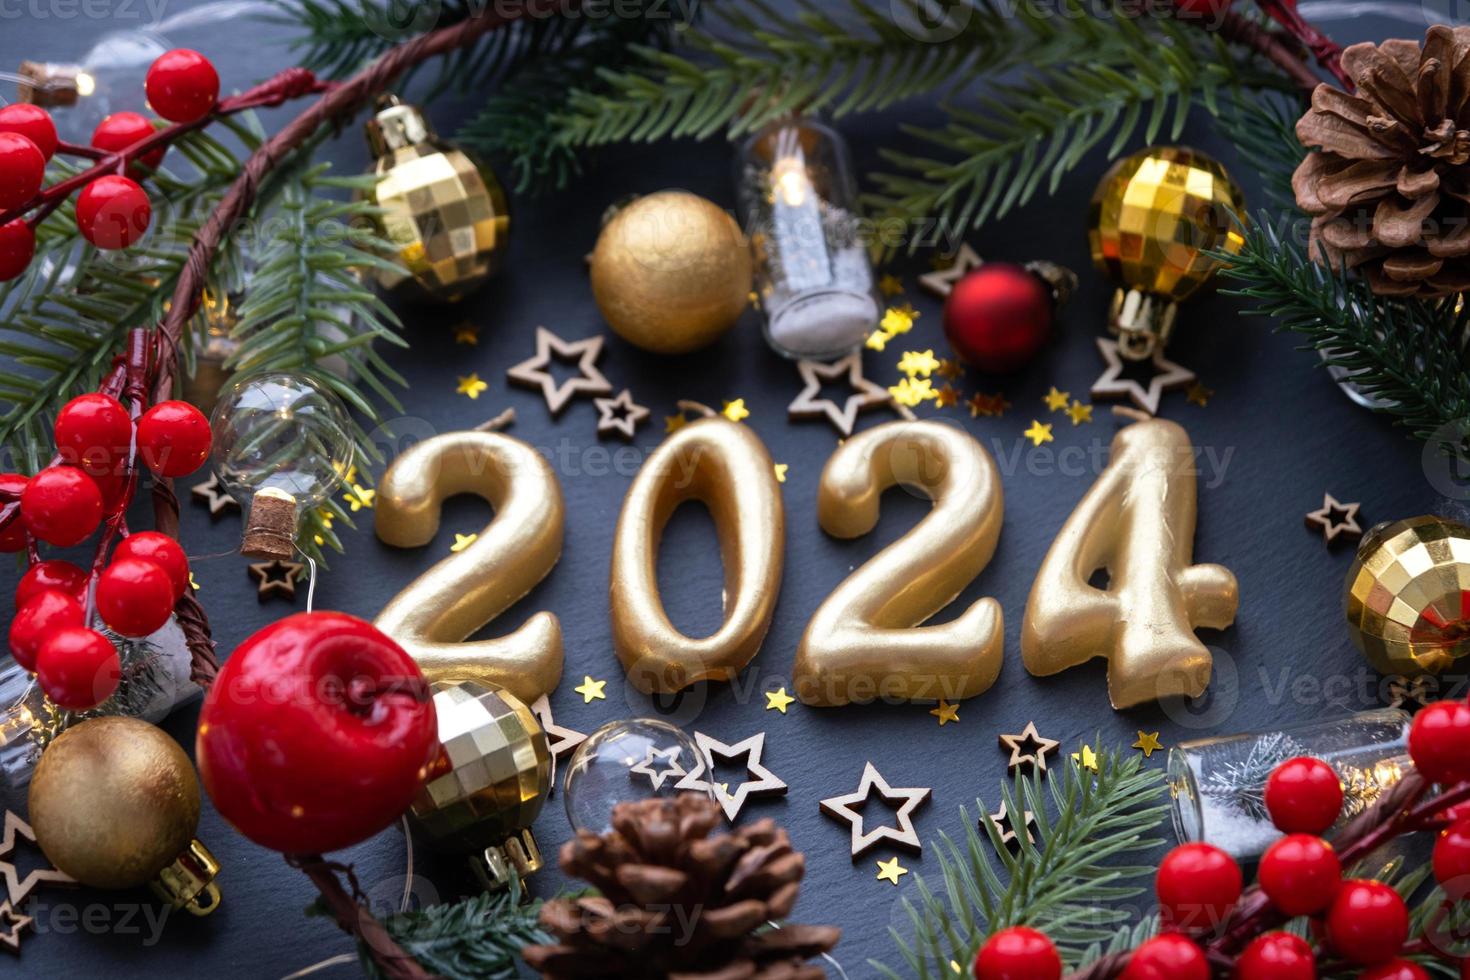 Une Bonne Année 2024 Beau Concept De Décoration Conception De Boule D'arbre  De Noël Style De Dessin À La Main Numéro 20 24 Modèle De Carte De Voeux  D'étoiles Brillantes Scintillantes Isolées